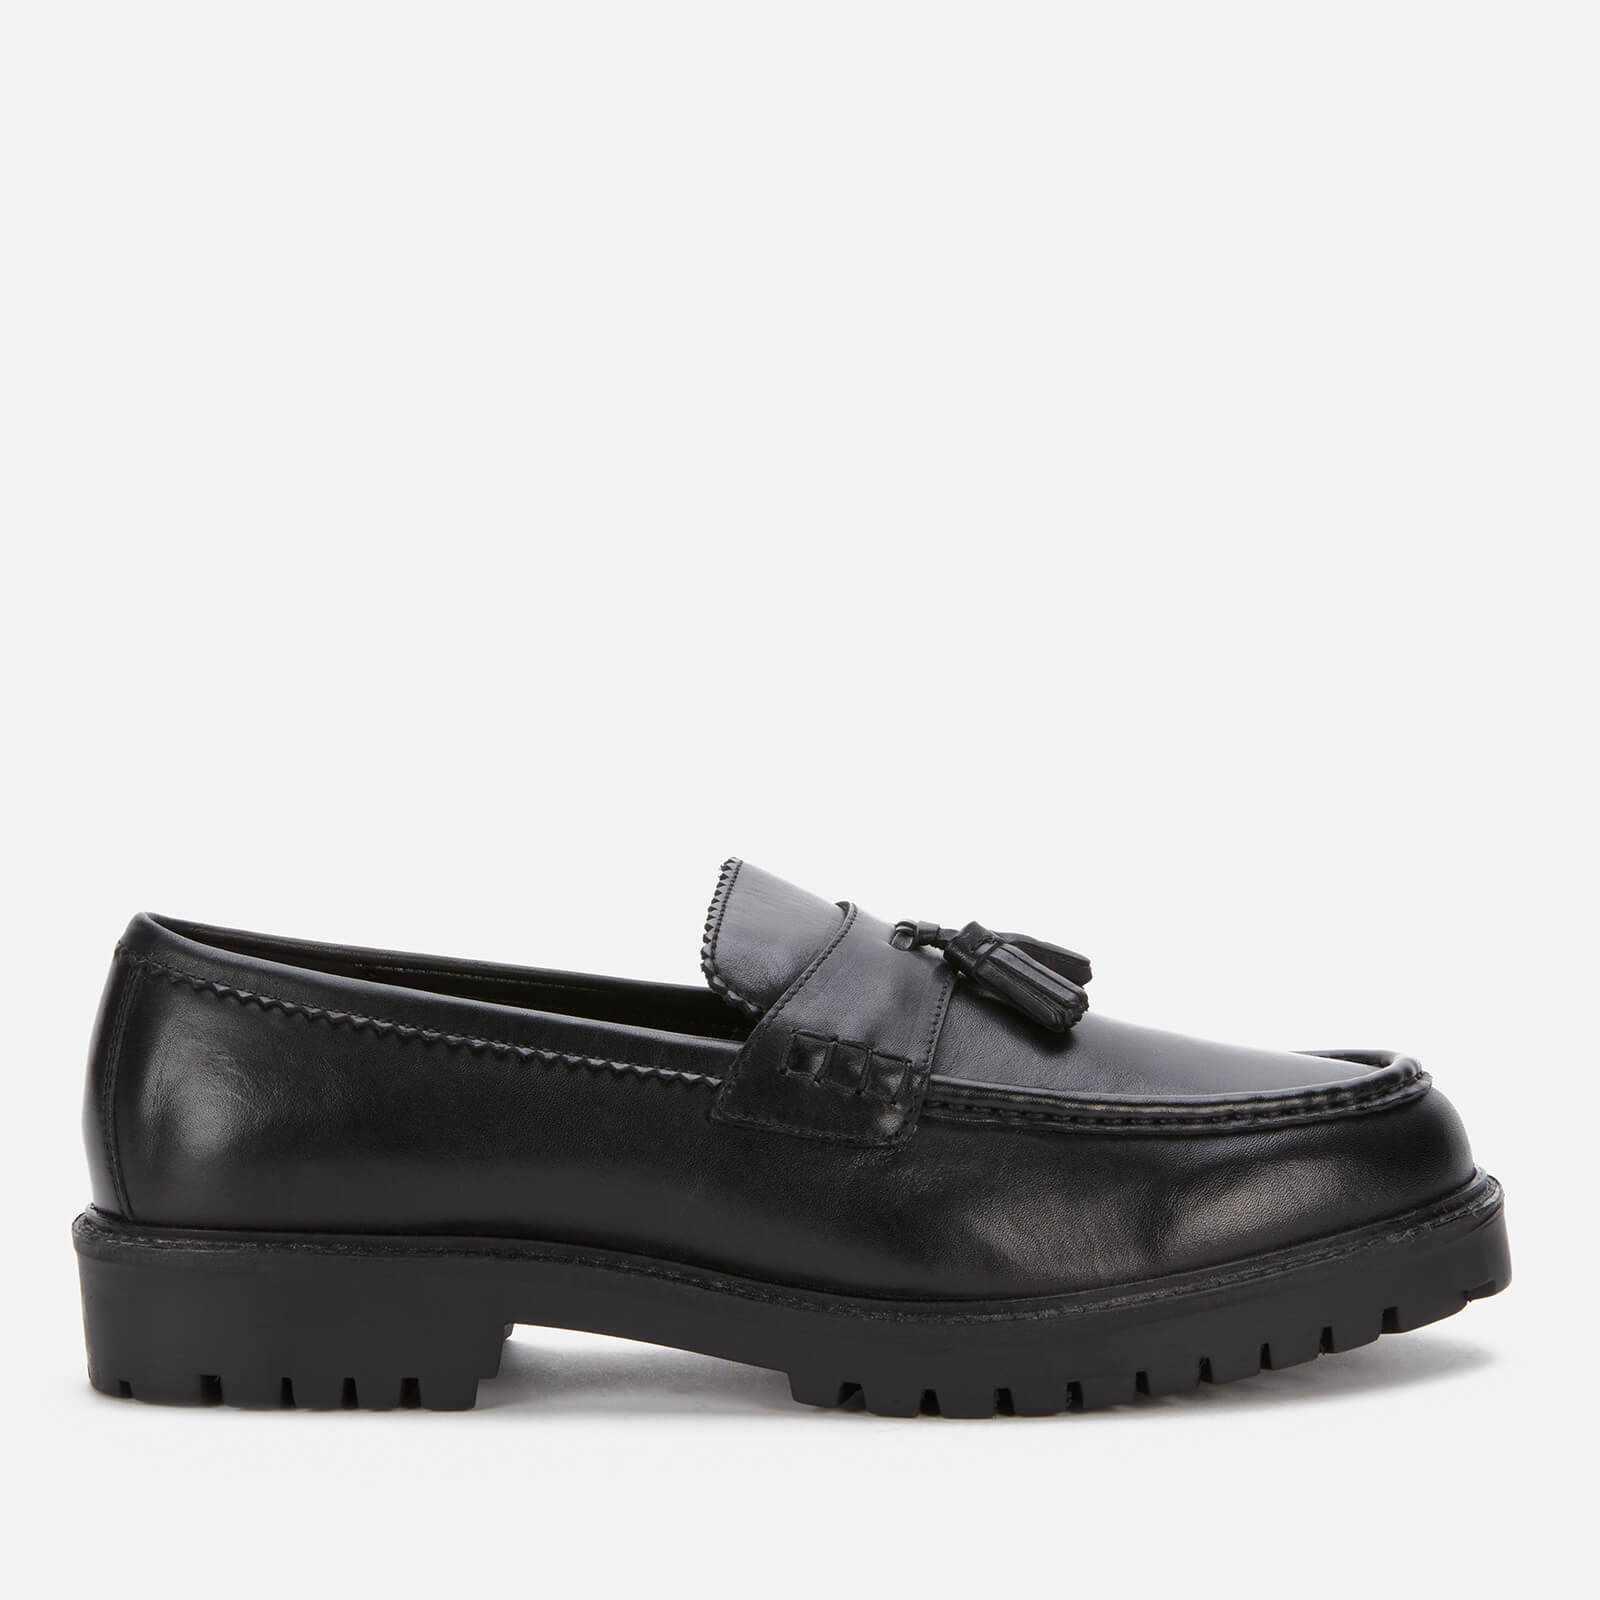 Walk London Men’s Sean Leather Tassel Loafers - Black